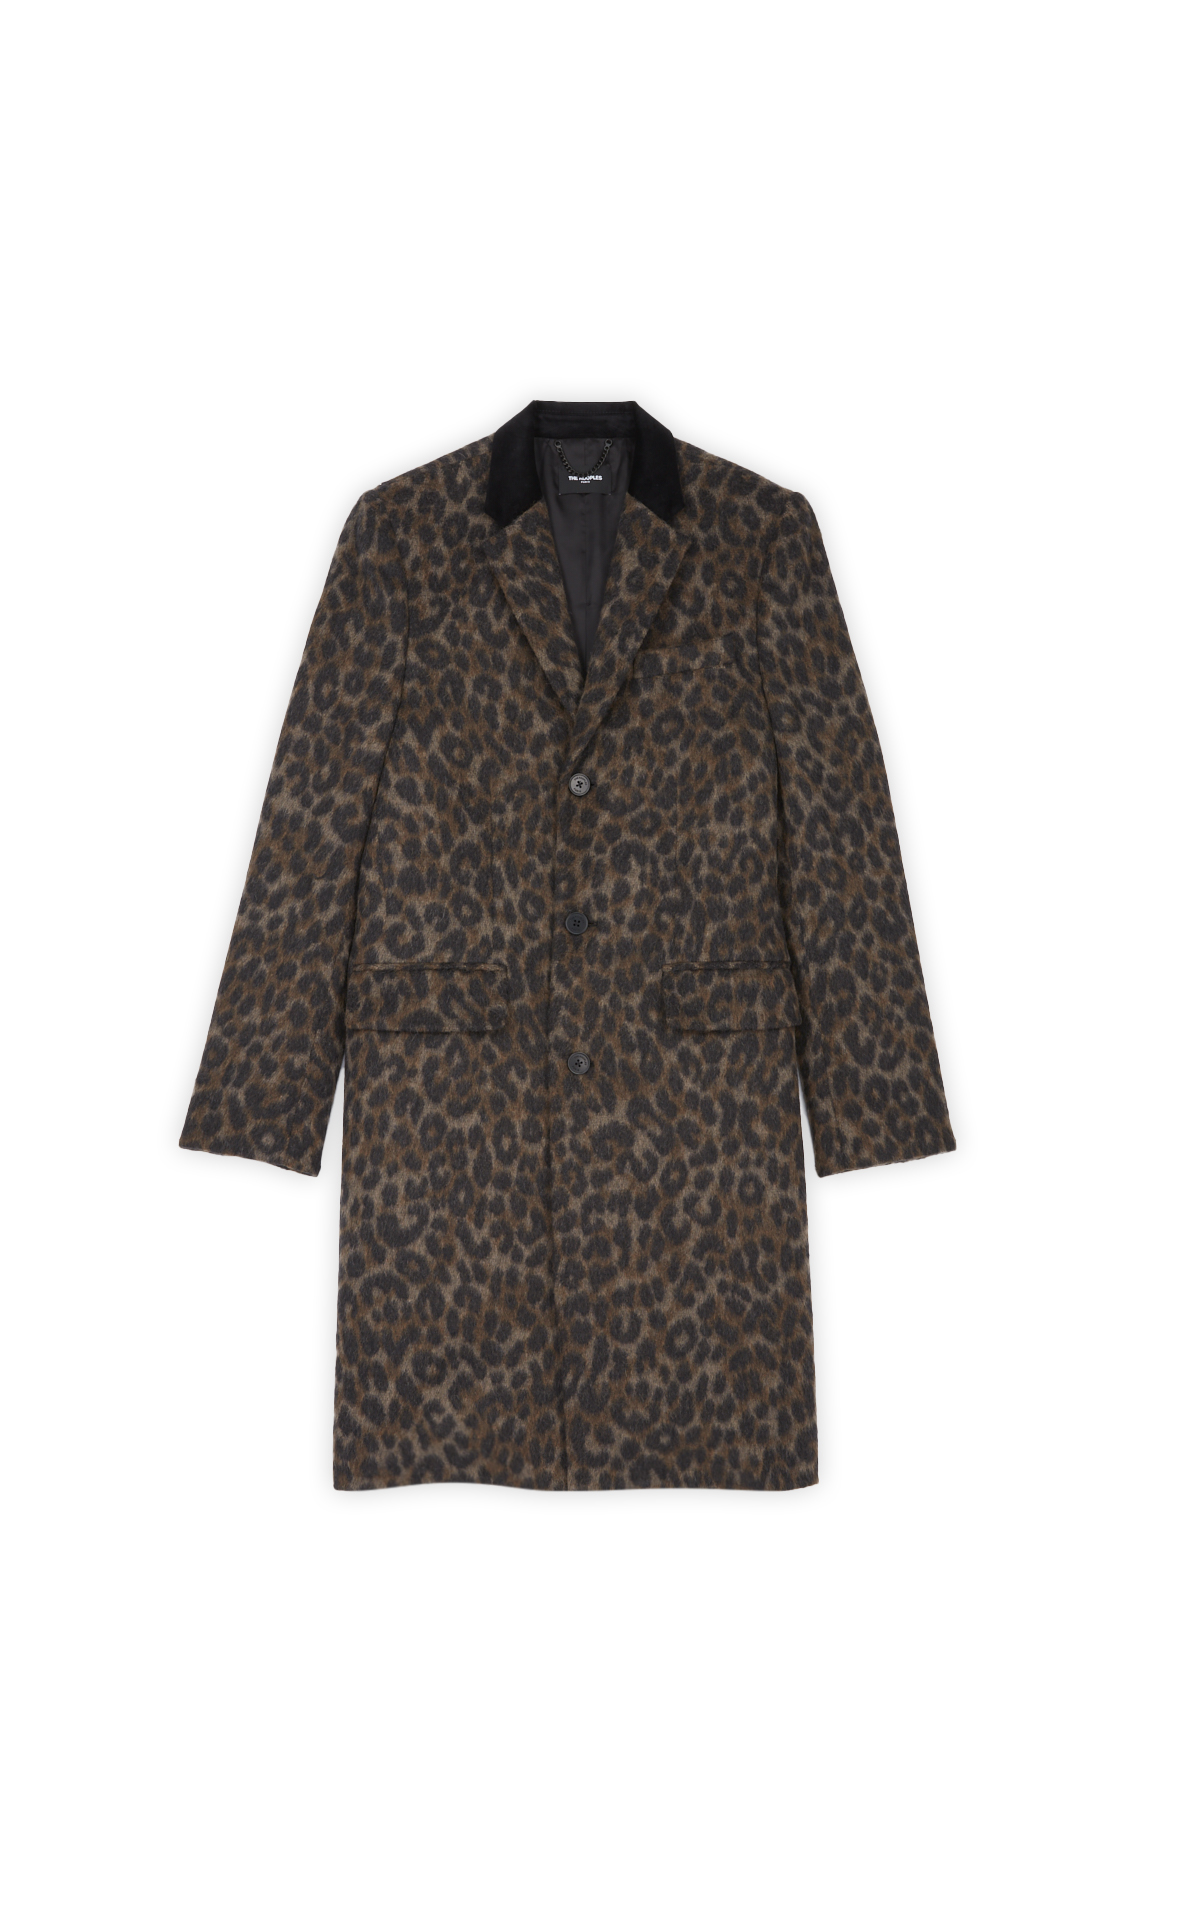 Manteau long texturé avec motifs léopard*